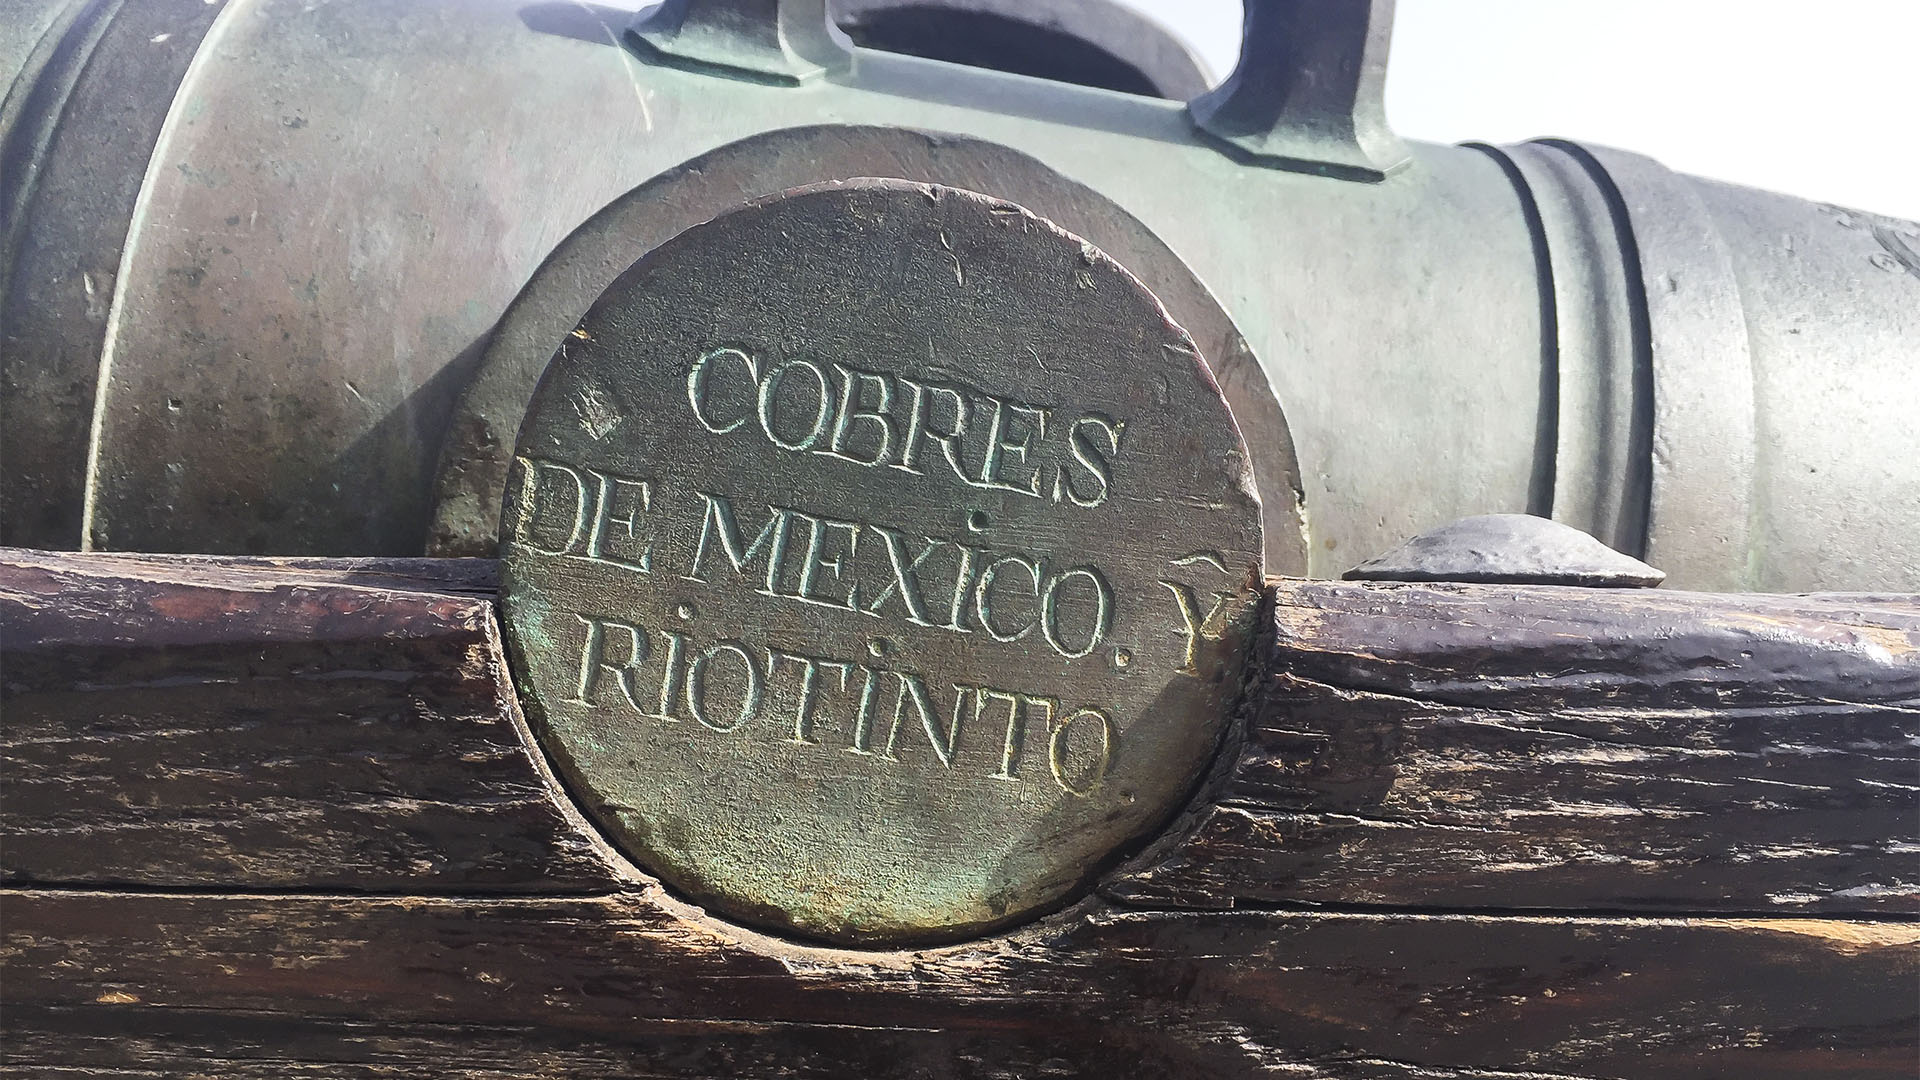 Die Geschichte der Kanonen der Batterie ist interessant. Teils wurden sie von Rio Tinto produziert, einem Unternehmen, das noch heute existiert und seinen Ursprung in den spanischen Rio Tinto Minen hat, in denen schon die Römer Kupfer schürften. Mehr Tradition geht nicht.